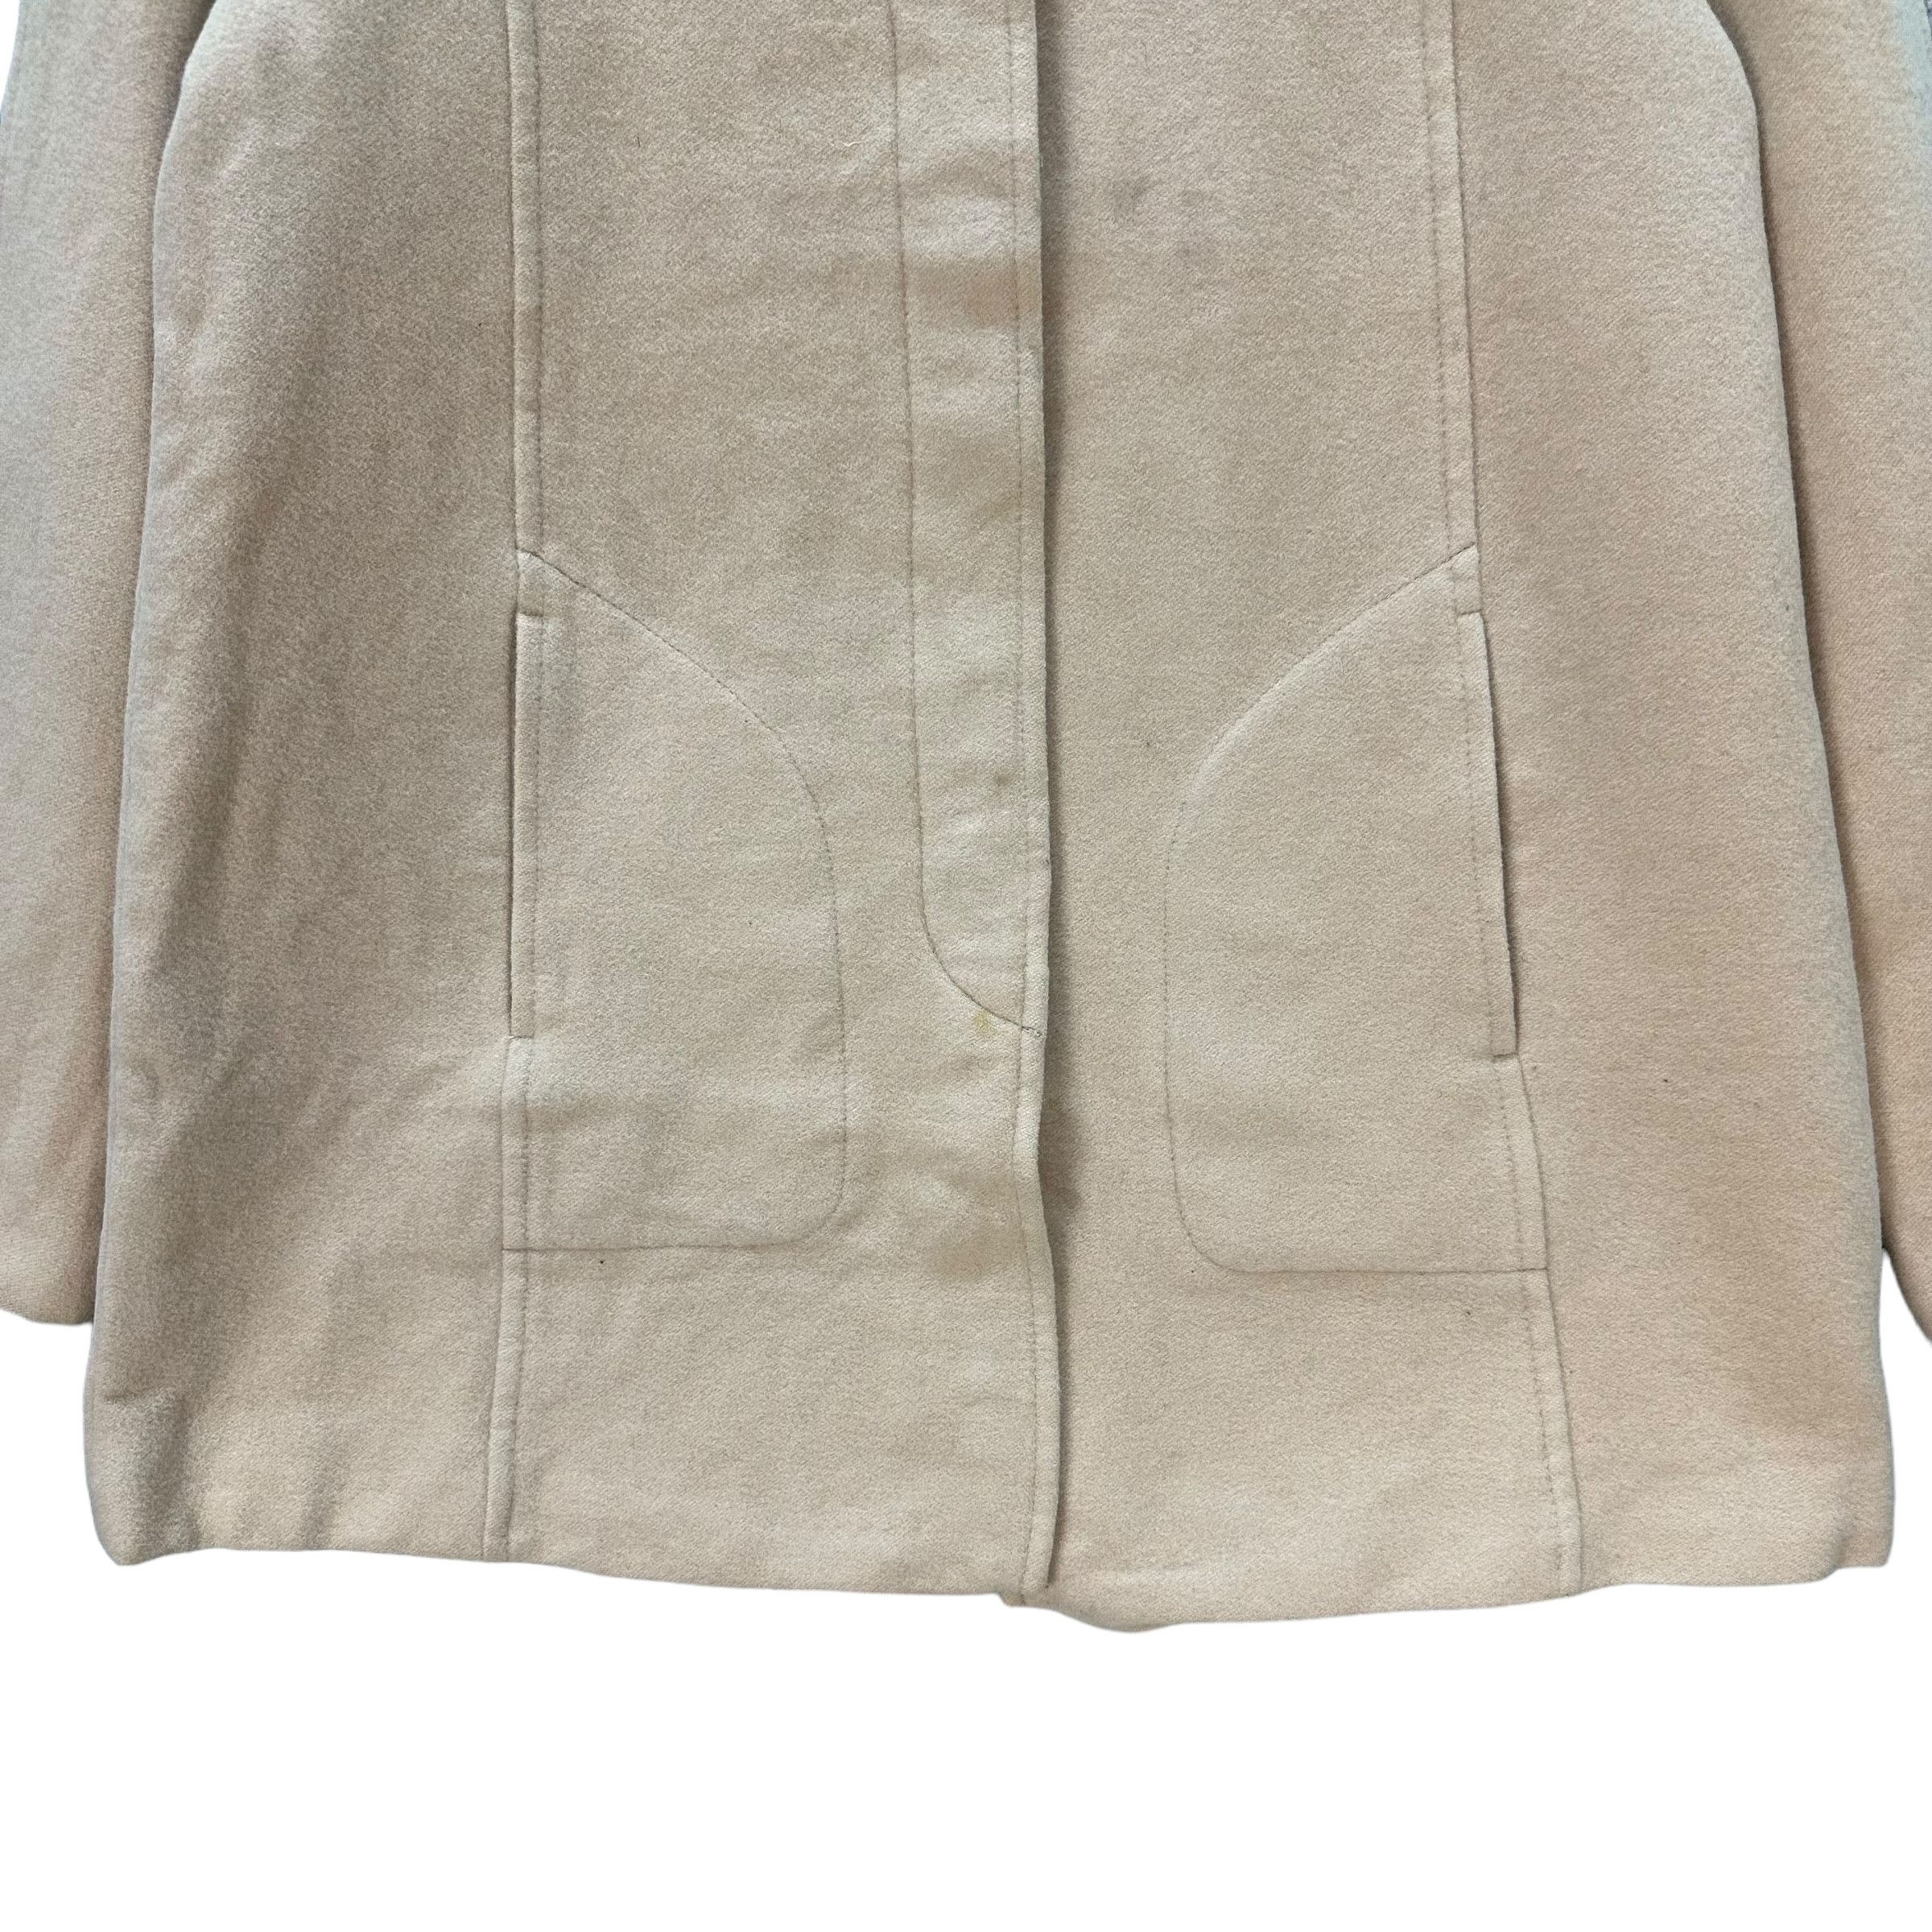 Vintage - Sonia Rykiel Wool Blend Coat Jacket #9117-58 - 3